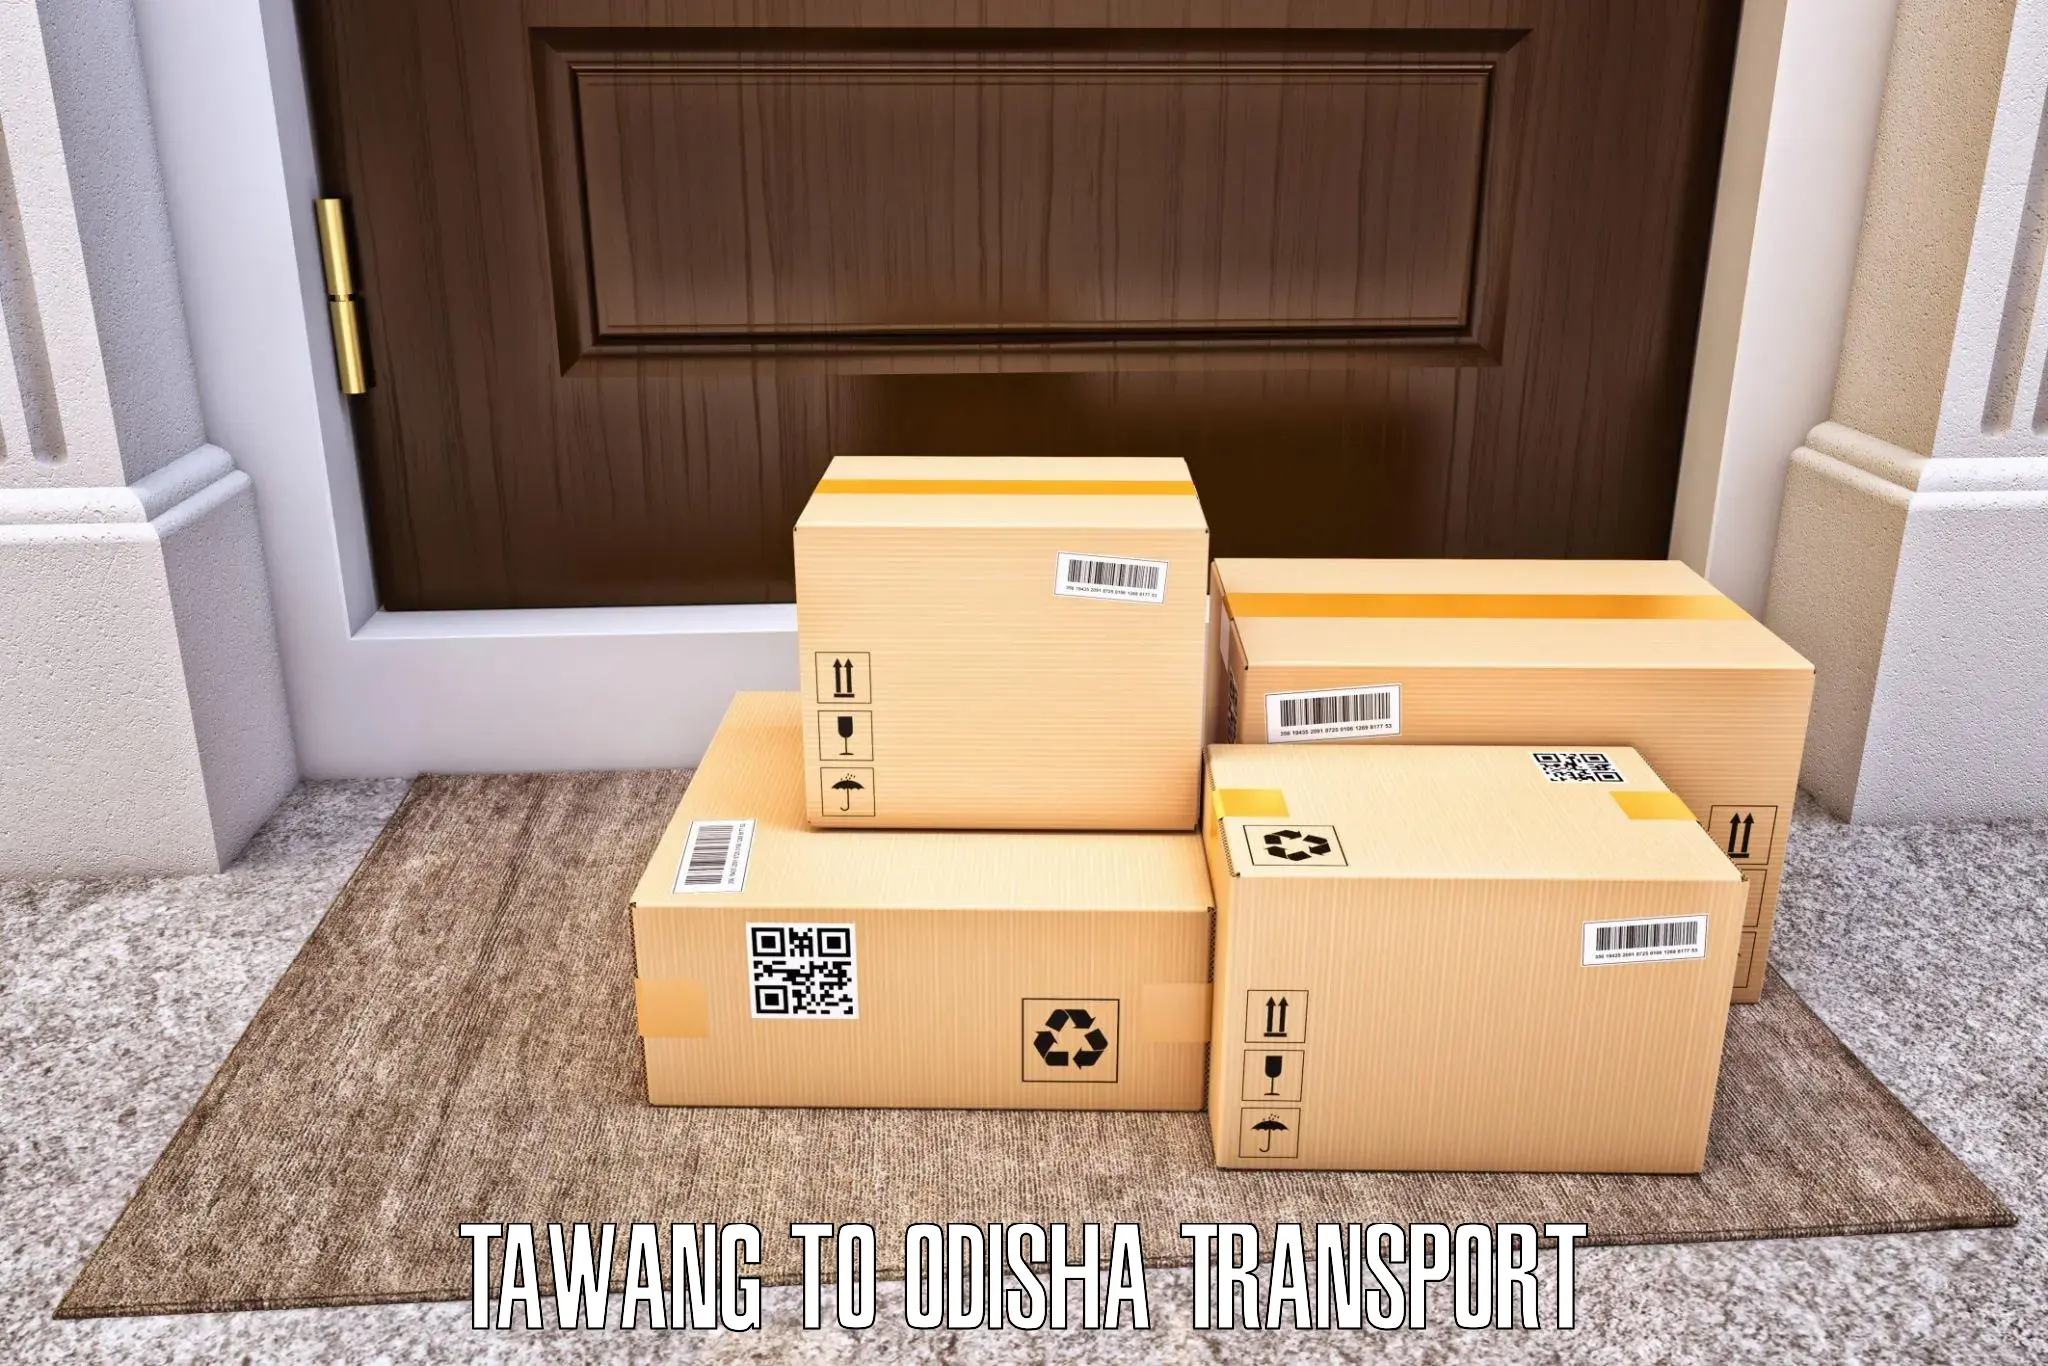 Transport in sharing Tawang to NIT Rourkela